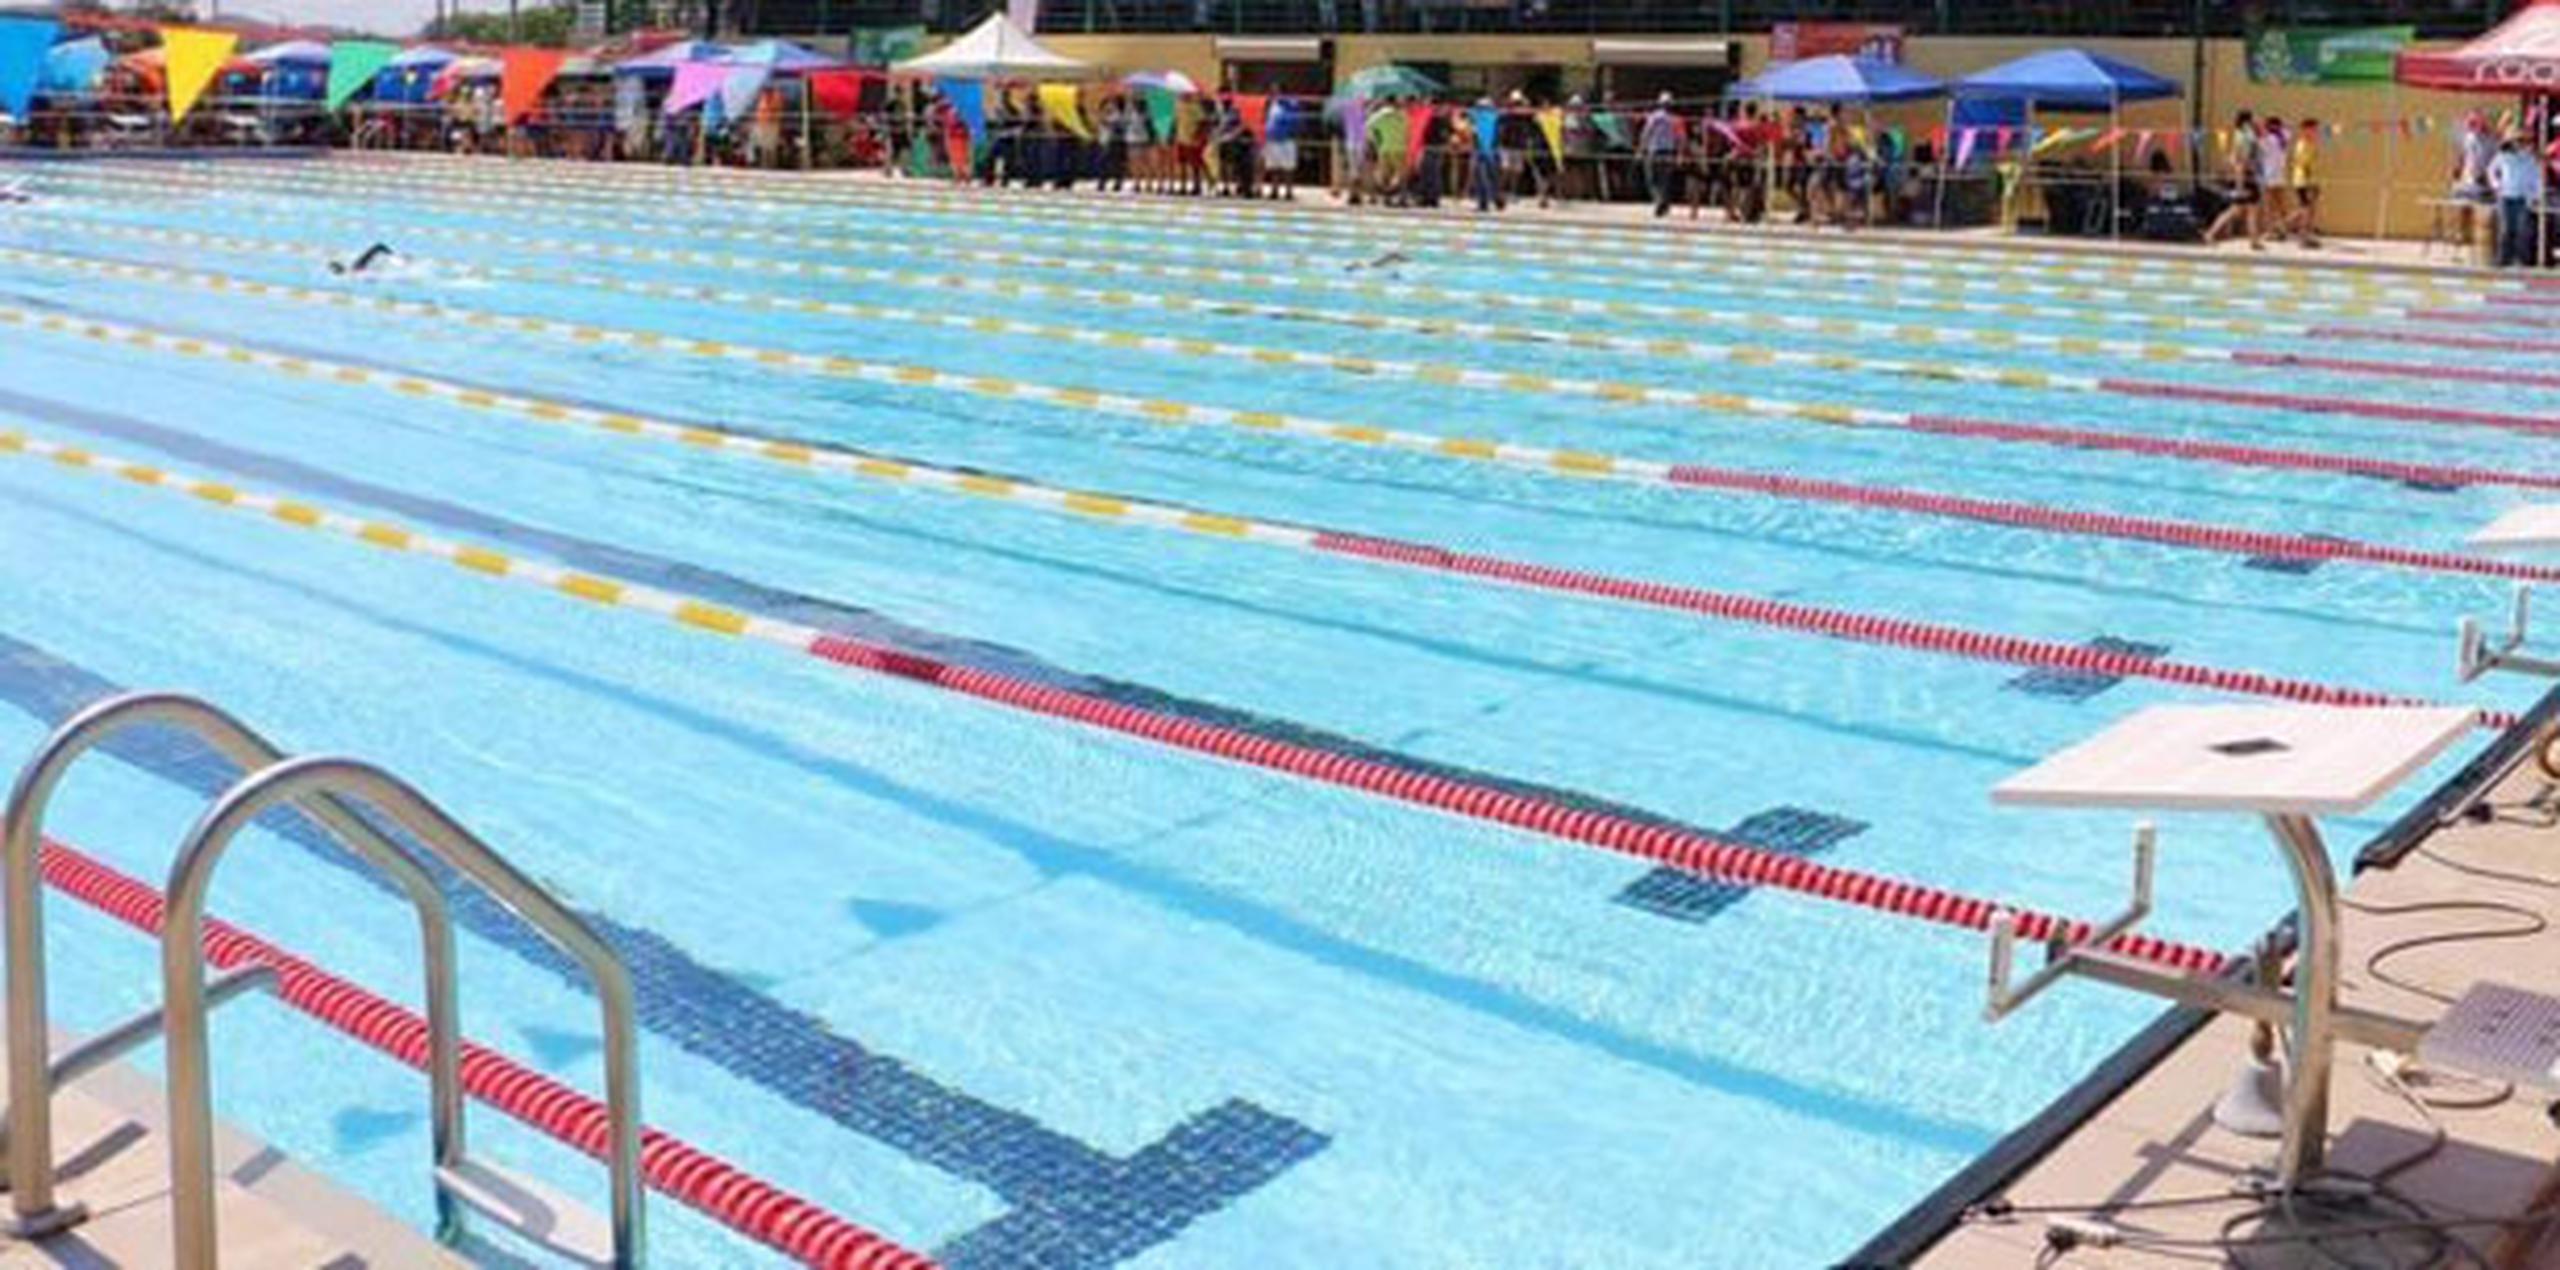 La concentración que se iba a montar en Puerto Rico será realizada ahora en el complejo acuático de la Universidad de Georgia Tech, sede de la olimpiada de Atlanta. (Archivo)